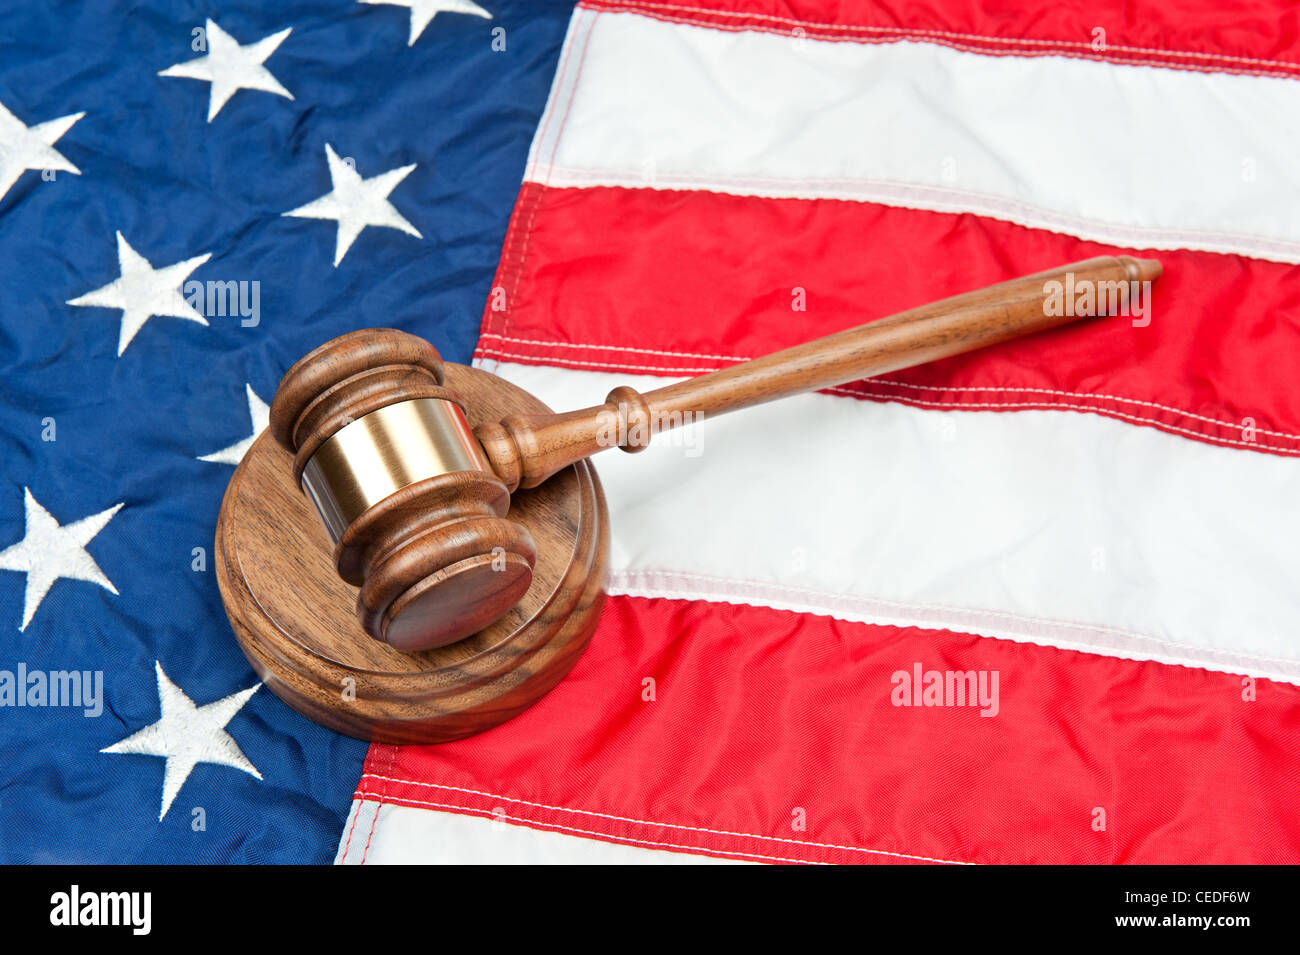 Un marteau et sound block sur un drapeau américain représentant le système juridique et l'inférence d'une loi aux Etats-Unis Banque D'Images